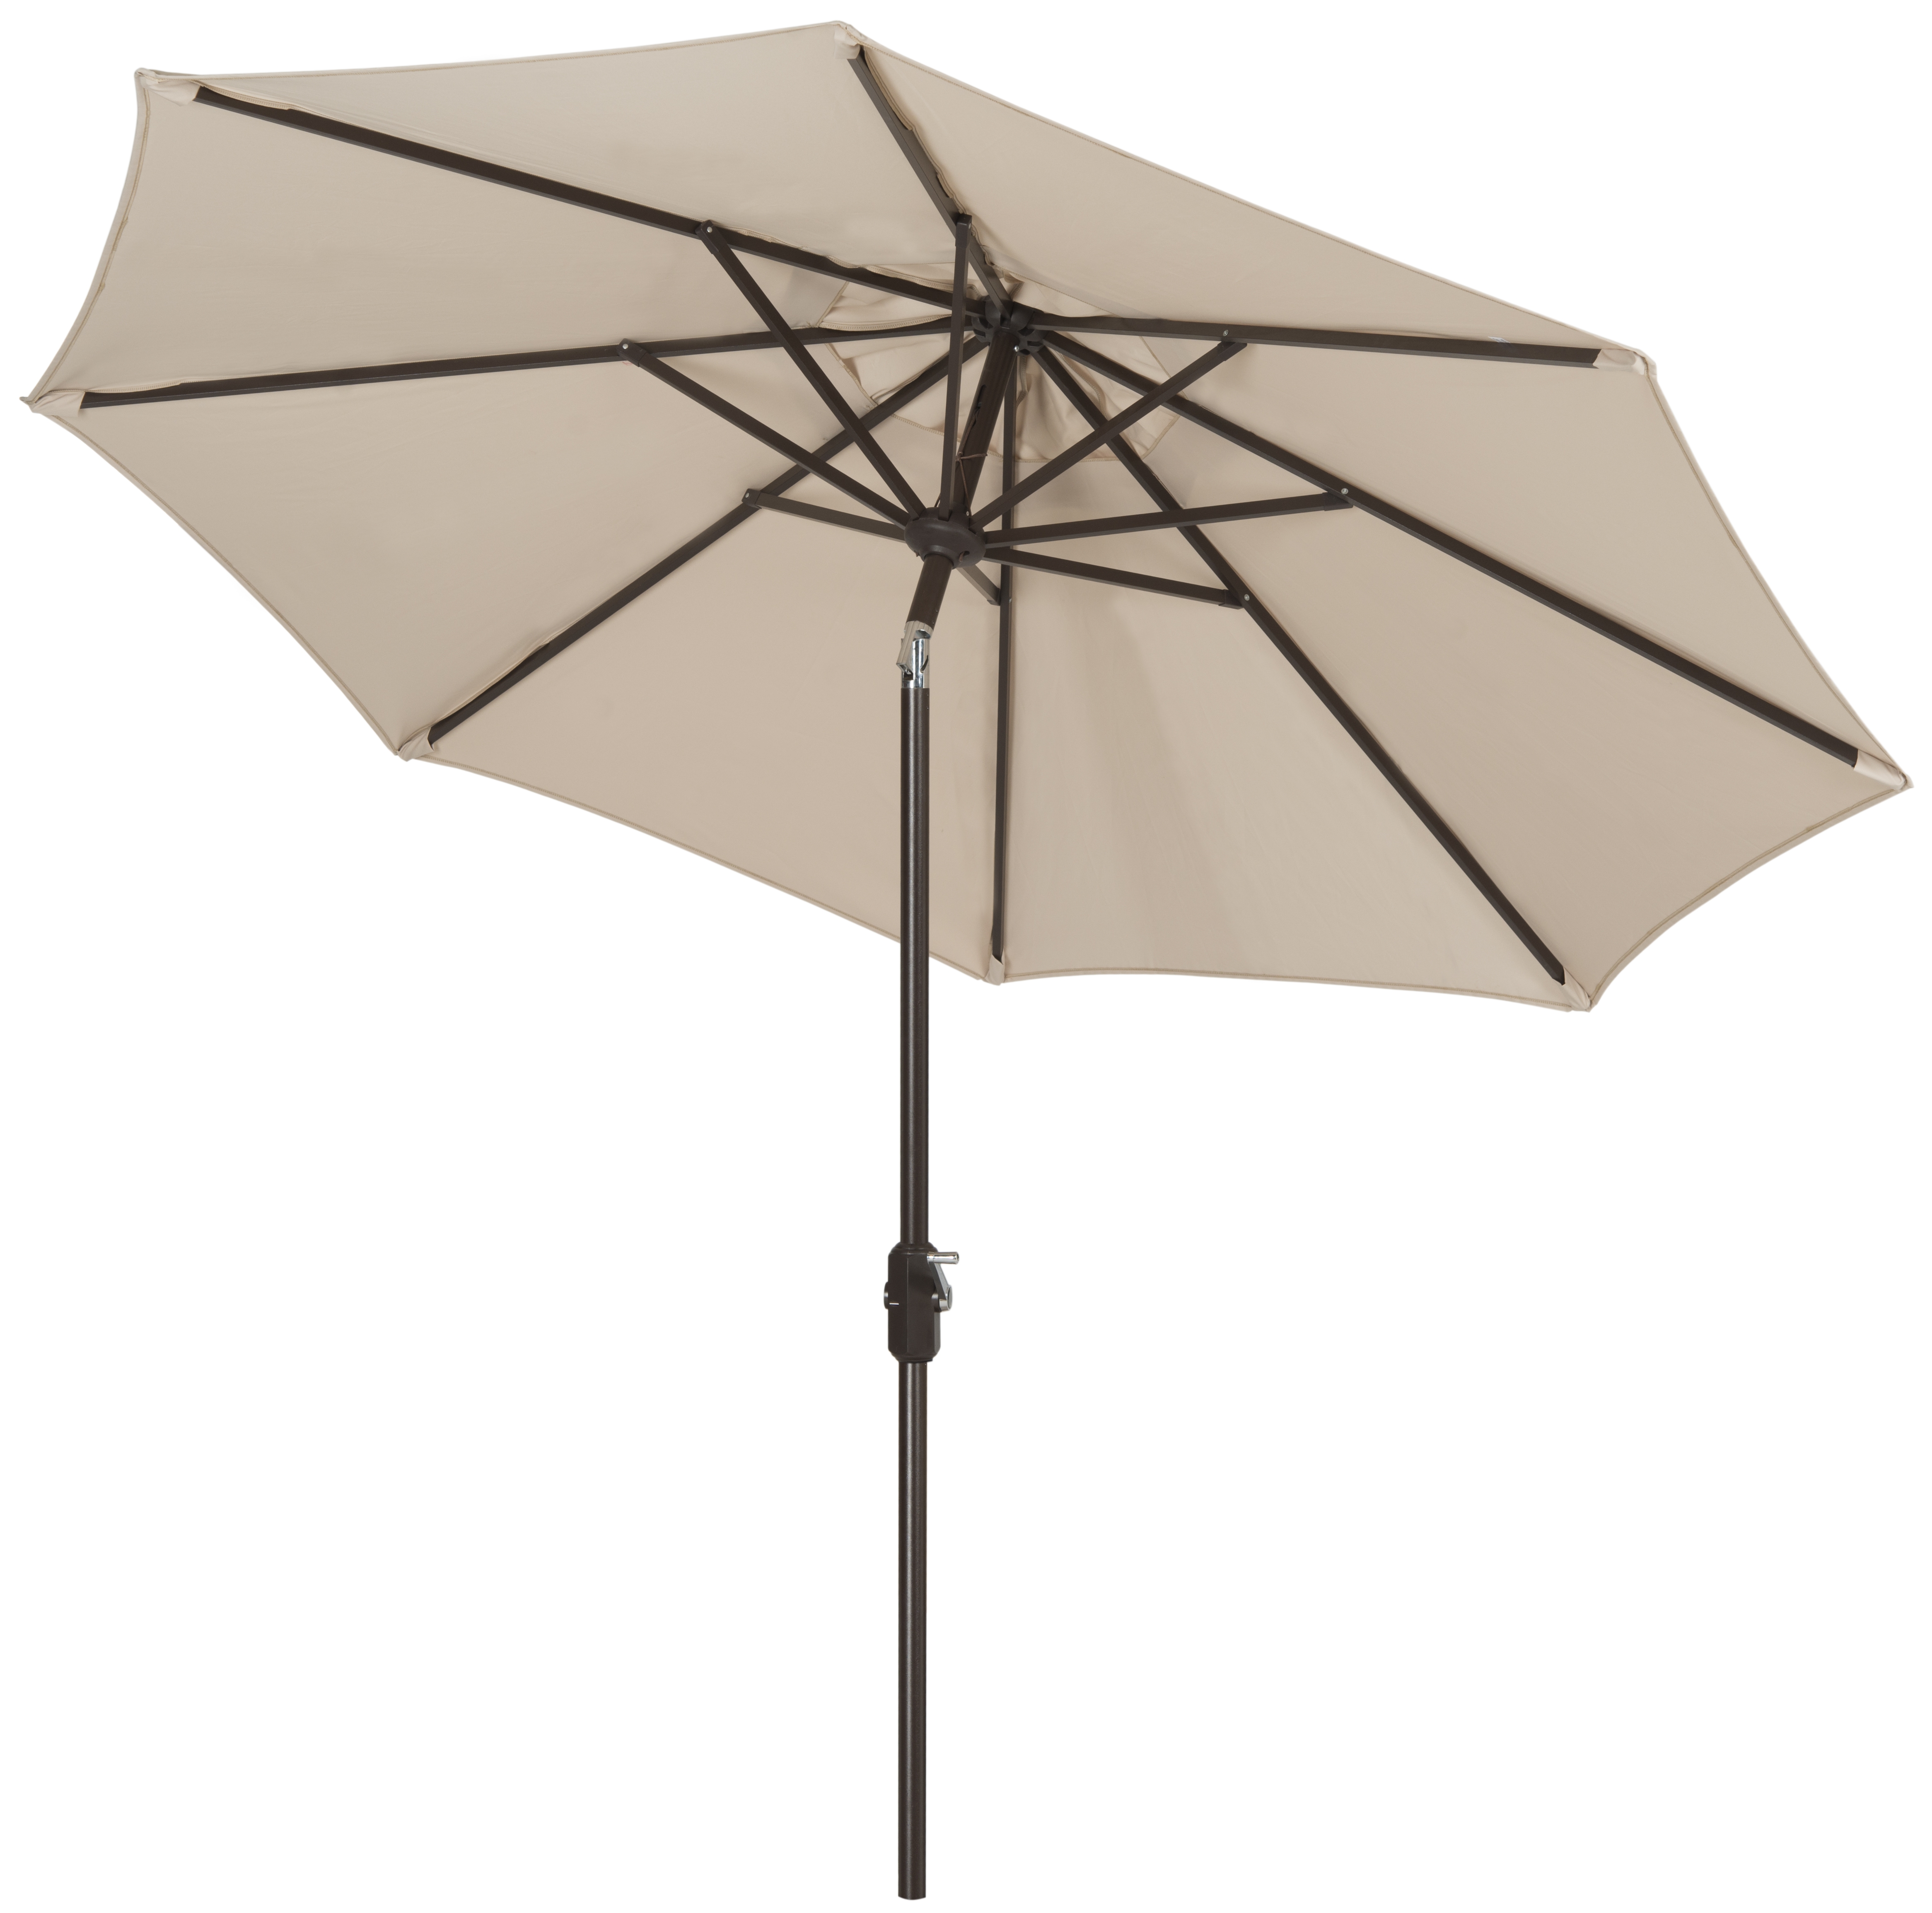 Uv Resistant Ortega 9 Ft Auto Tilt Crank Umbrella - Beige - Safavieh - Image 1